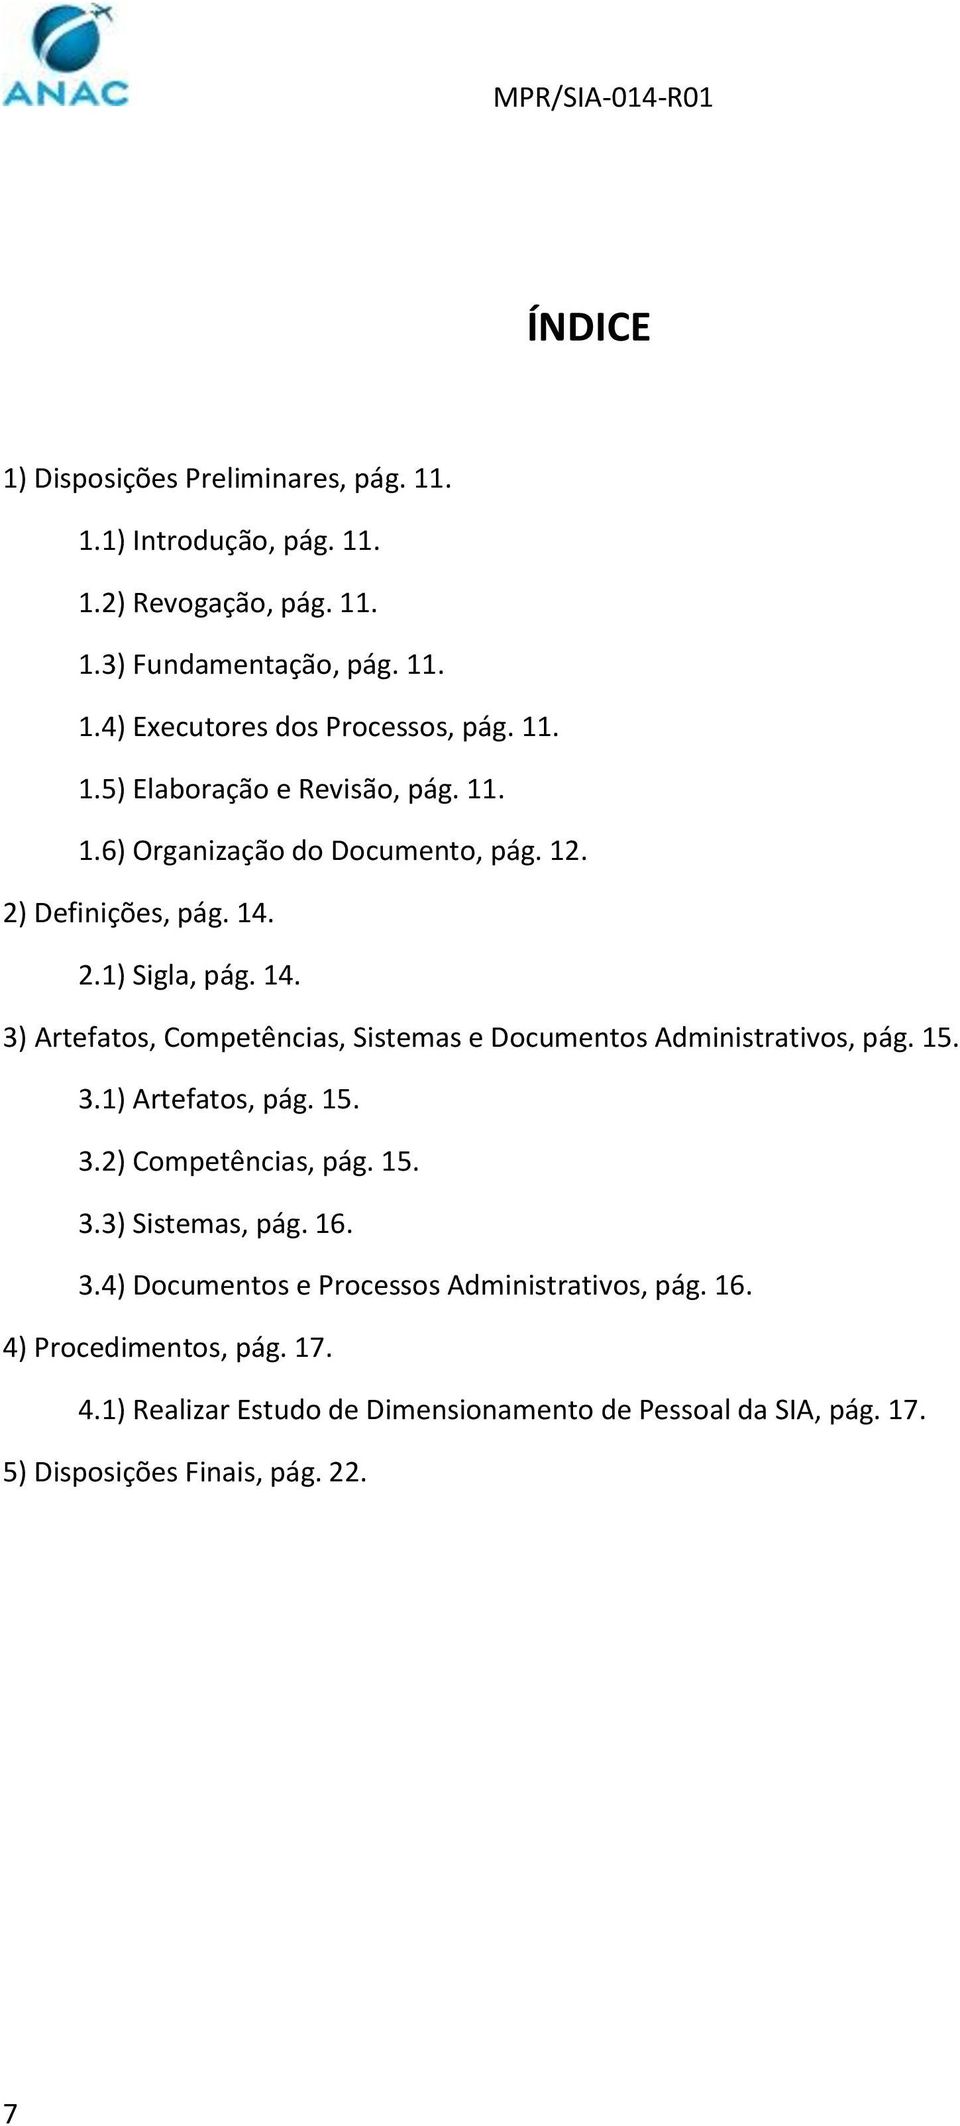 2.1) Sigla, pág. 14. 3) Artefatos, Competências, Sistemas e Documentos Administrativos, pág. 15. 3.1) Artefatos, pág. 15. 3.2) Competências, pág. 15. 3.3) Sistemas, pág.